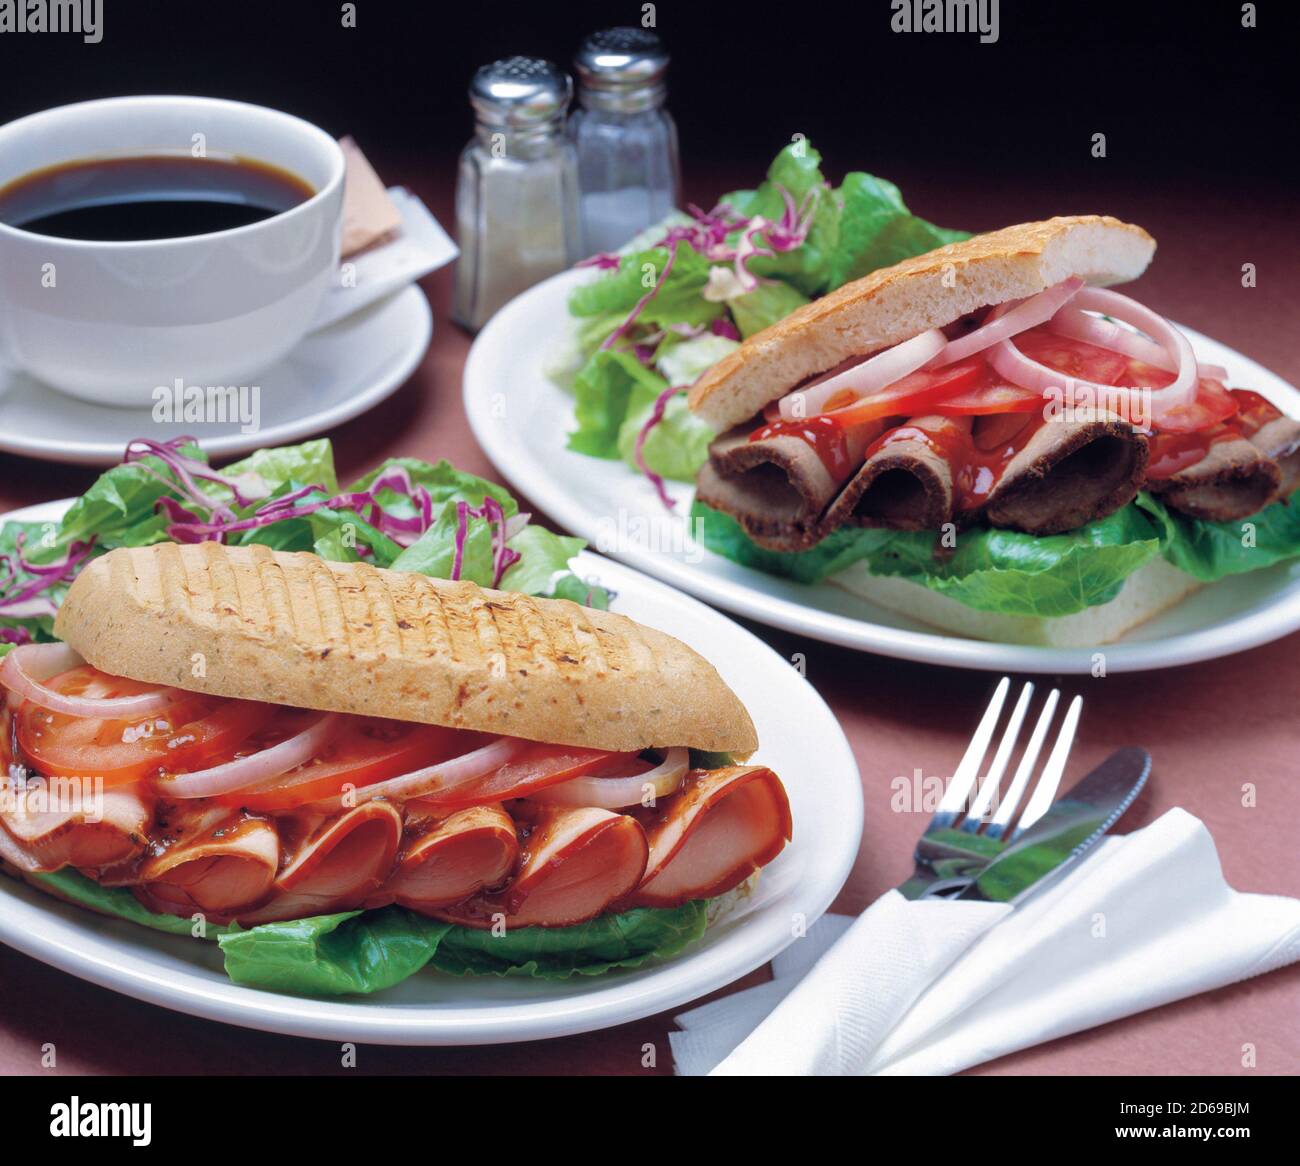 Deux sandwichs avec légumes frais, jambon, tomate et oignon dans du pain ciabatta servi avec une tasse de café Banque D'Images